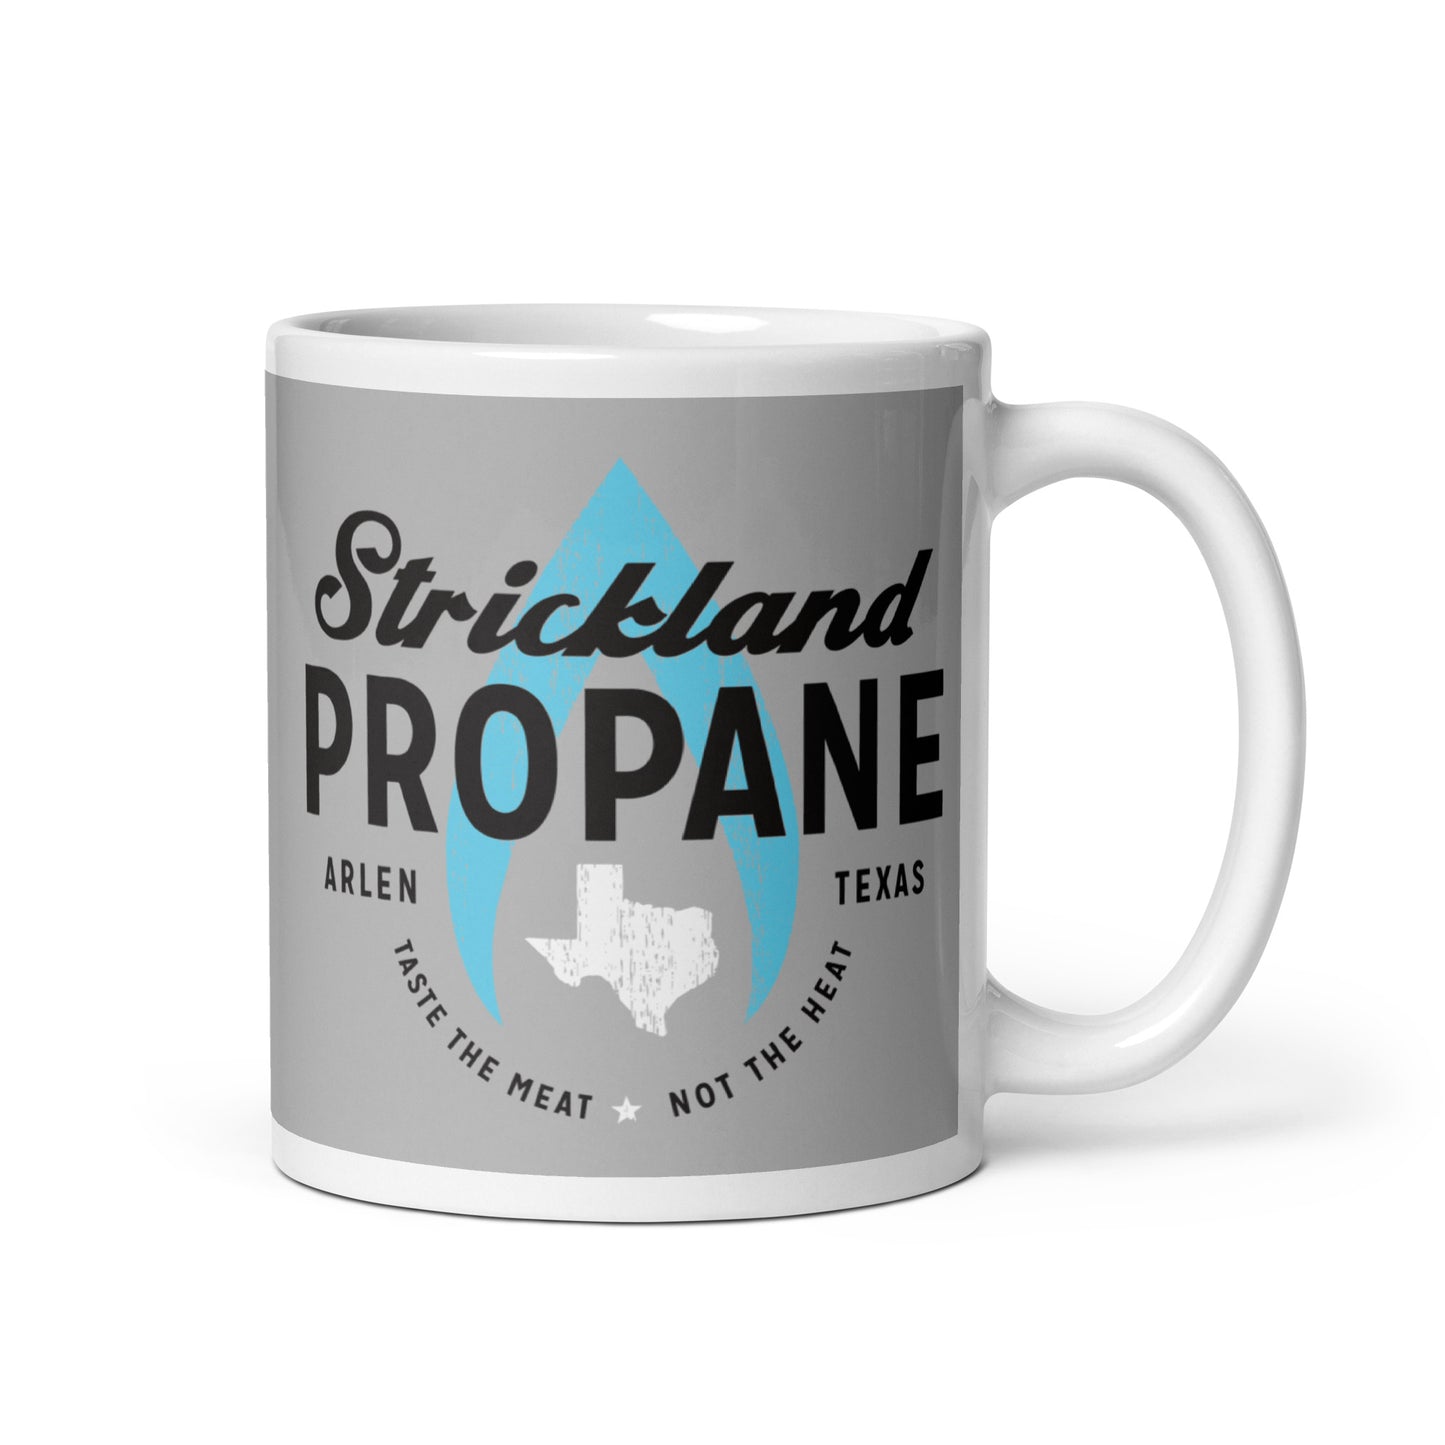 Strickland Propane Mug